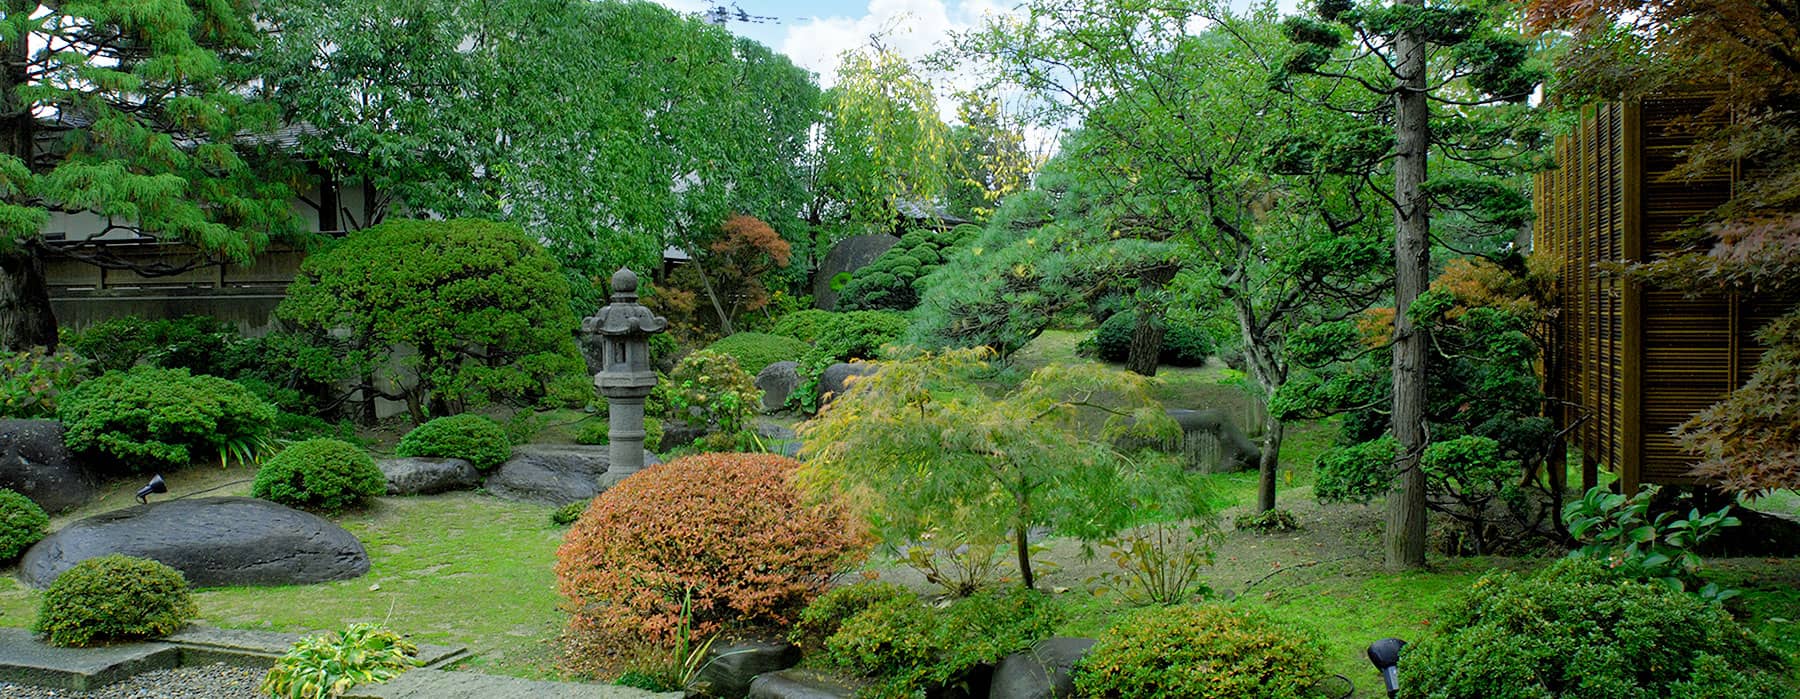 松の湯庭園